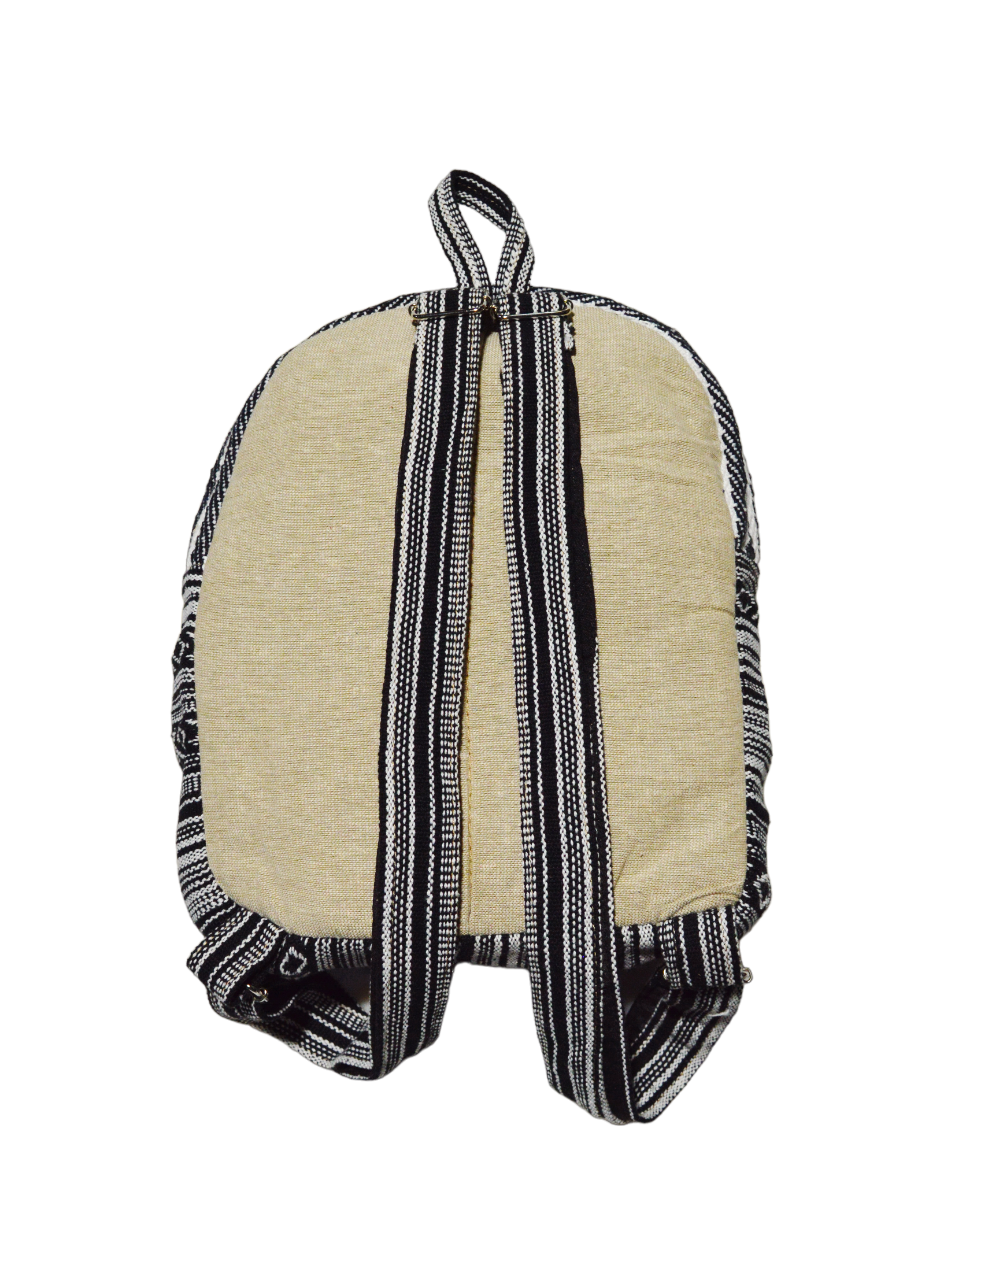 Рюкзак черно-белый, полосы с крестиками-ноликами, 30 x 25 см